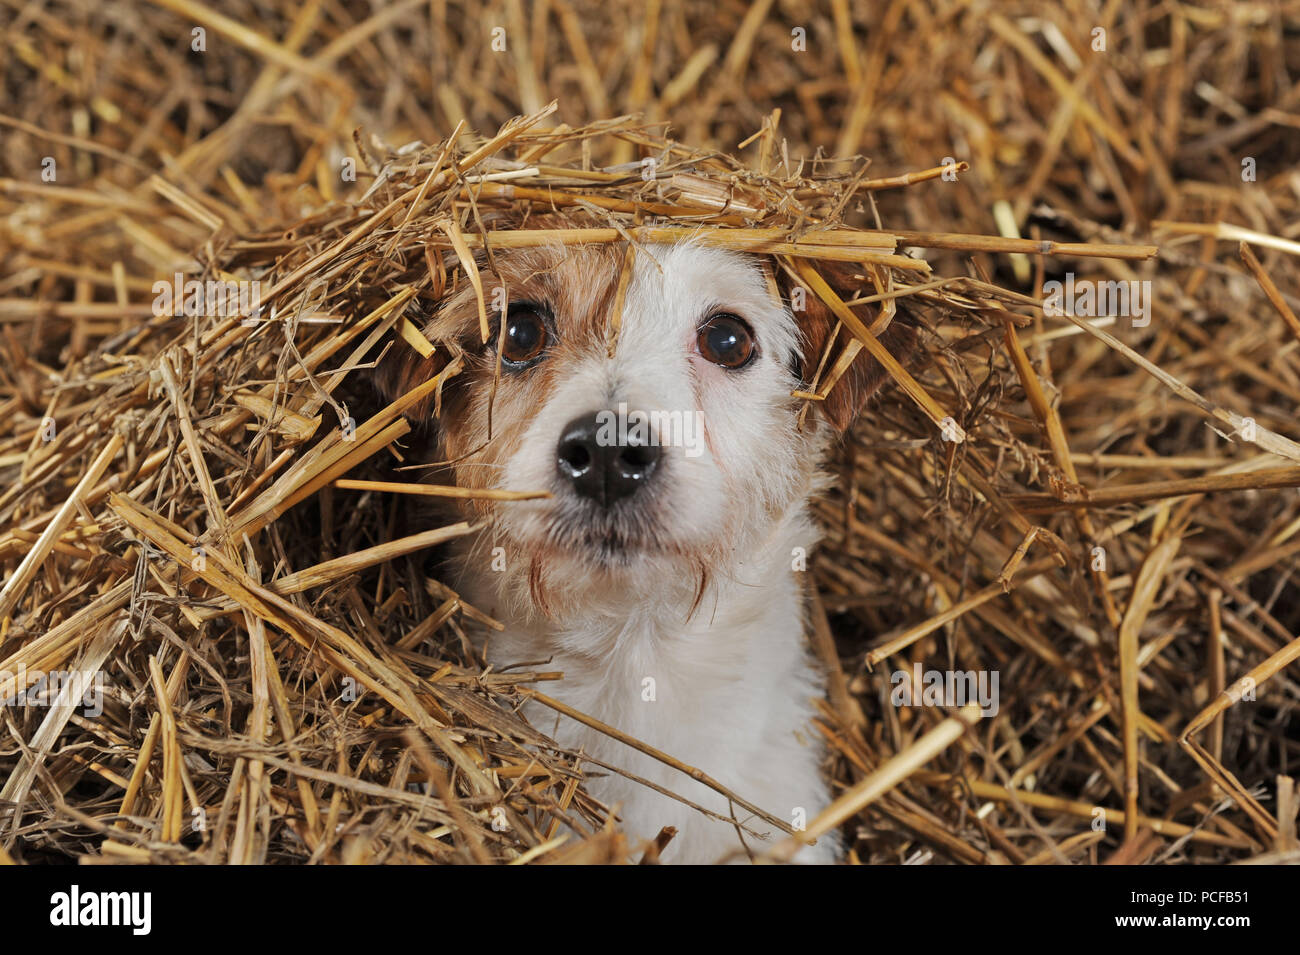 Jack Russell Terrier, brun et blanc, femelle couché dans la paille, portrait animal, studio shot, Allemagne Banque D'Images